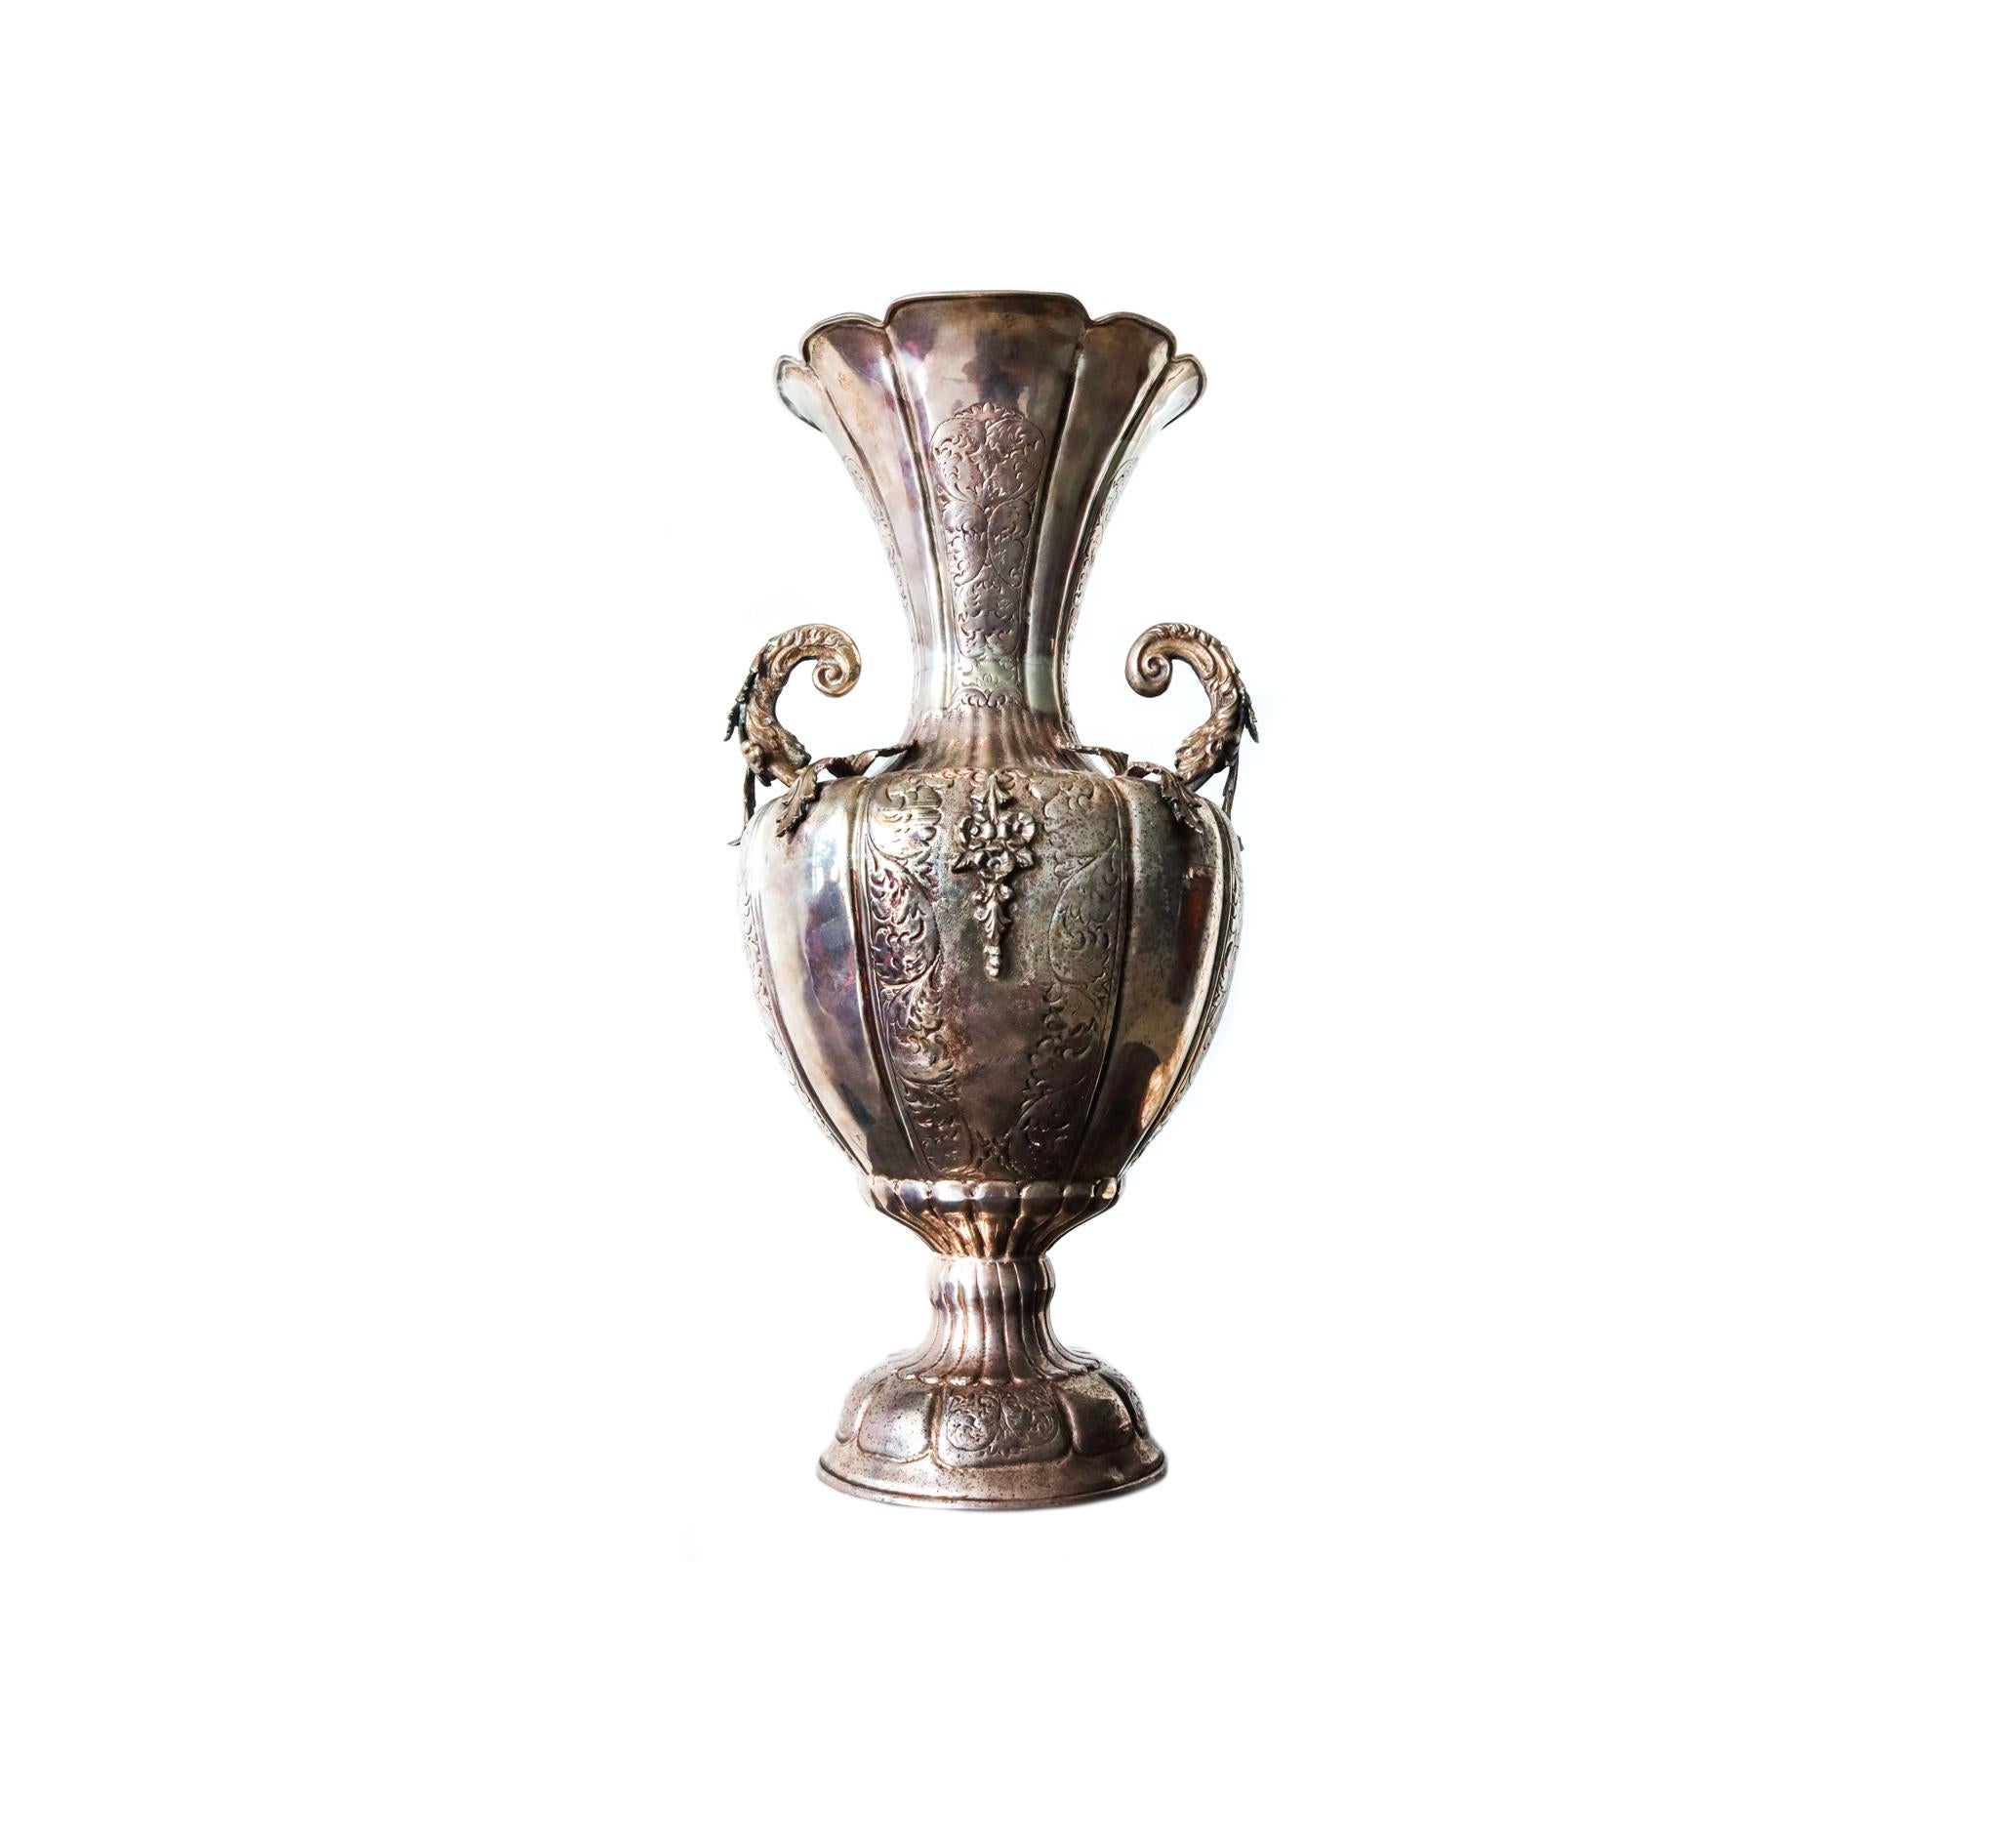 Eine Amphora-Vase mit Henkeln aus der spanischen Kolonialzeit.

Wunderschönes übergroßes antikes Silberstück mit barocken und neoklassizistischen Mustern. Hergestellt zu Beginn des 19. Jahrhunderts, während der spanischen Kolonialzeit, um 1820,